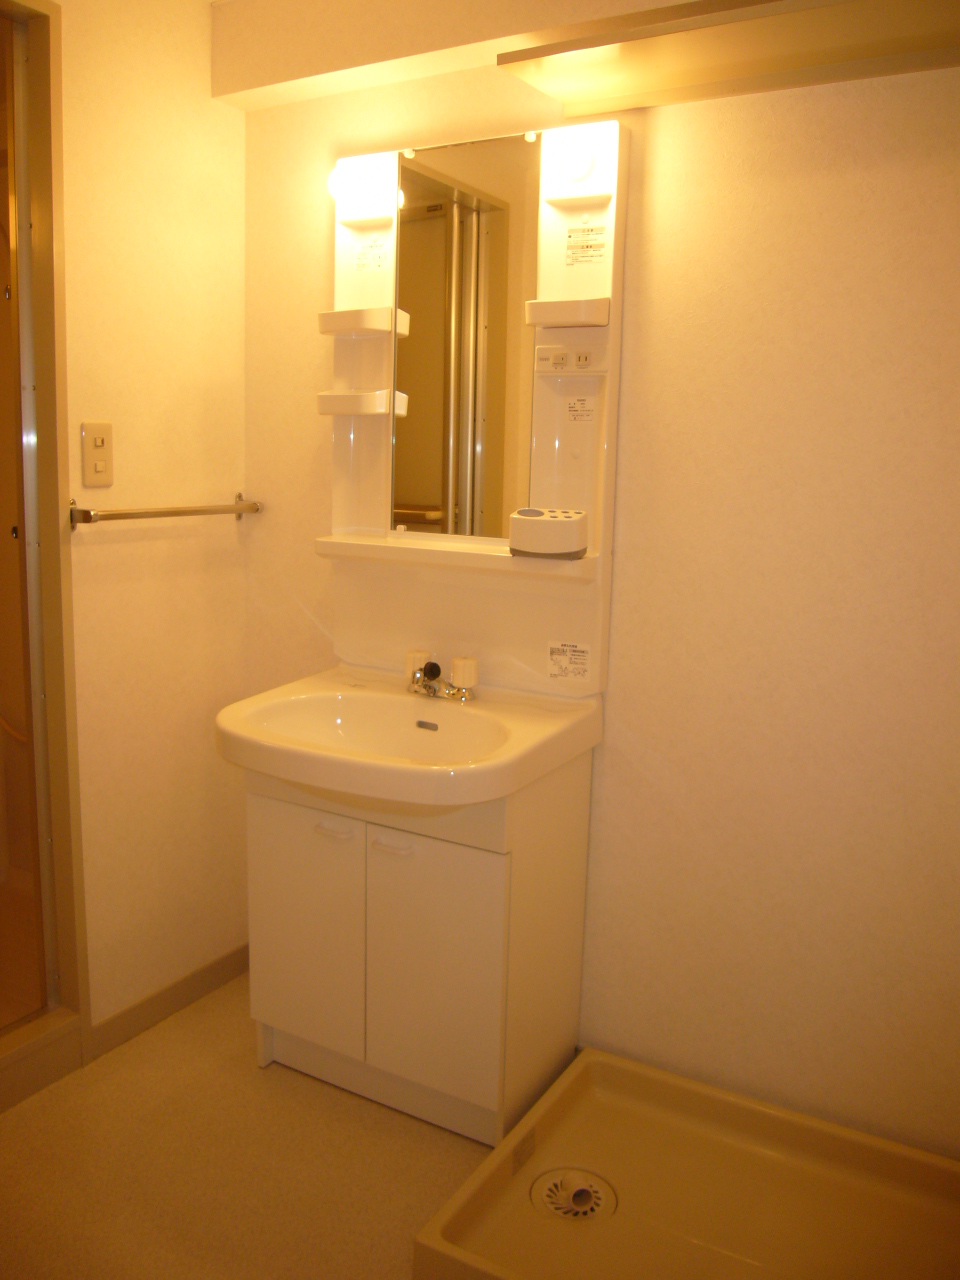 Washroom. Other Room No. ☆ Separate vanity